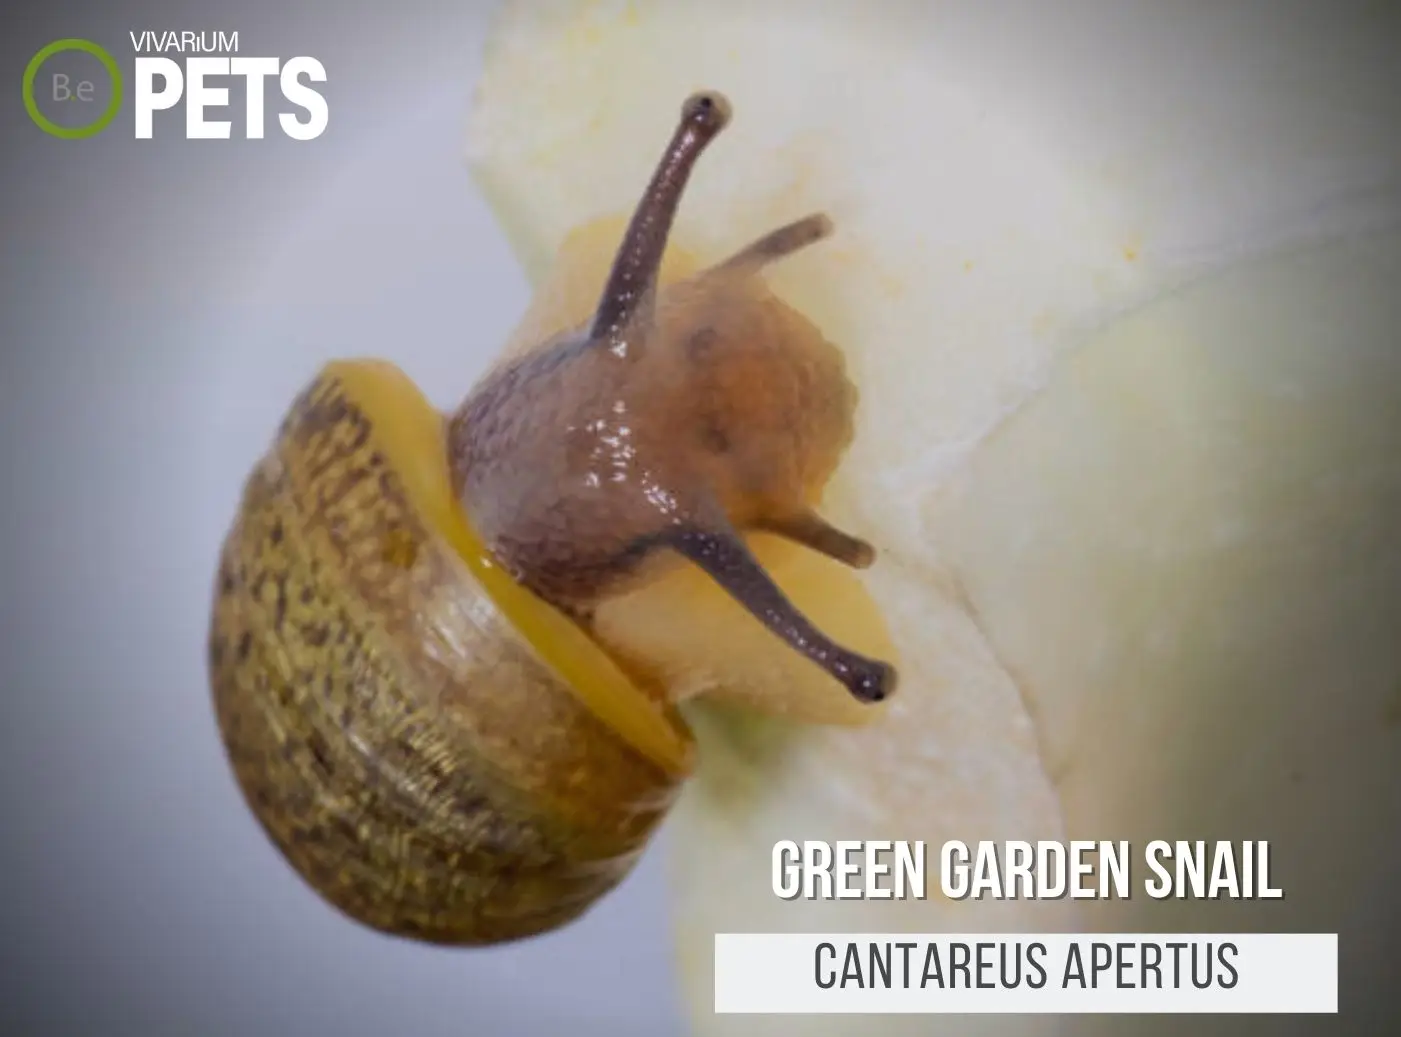 Cantareus apertus "Green Garden Snail" Care Guide